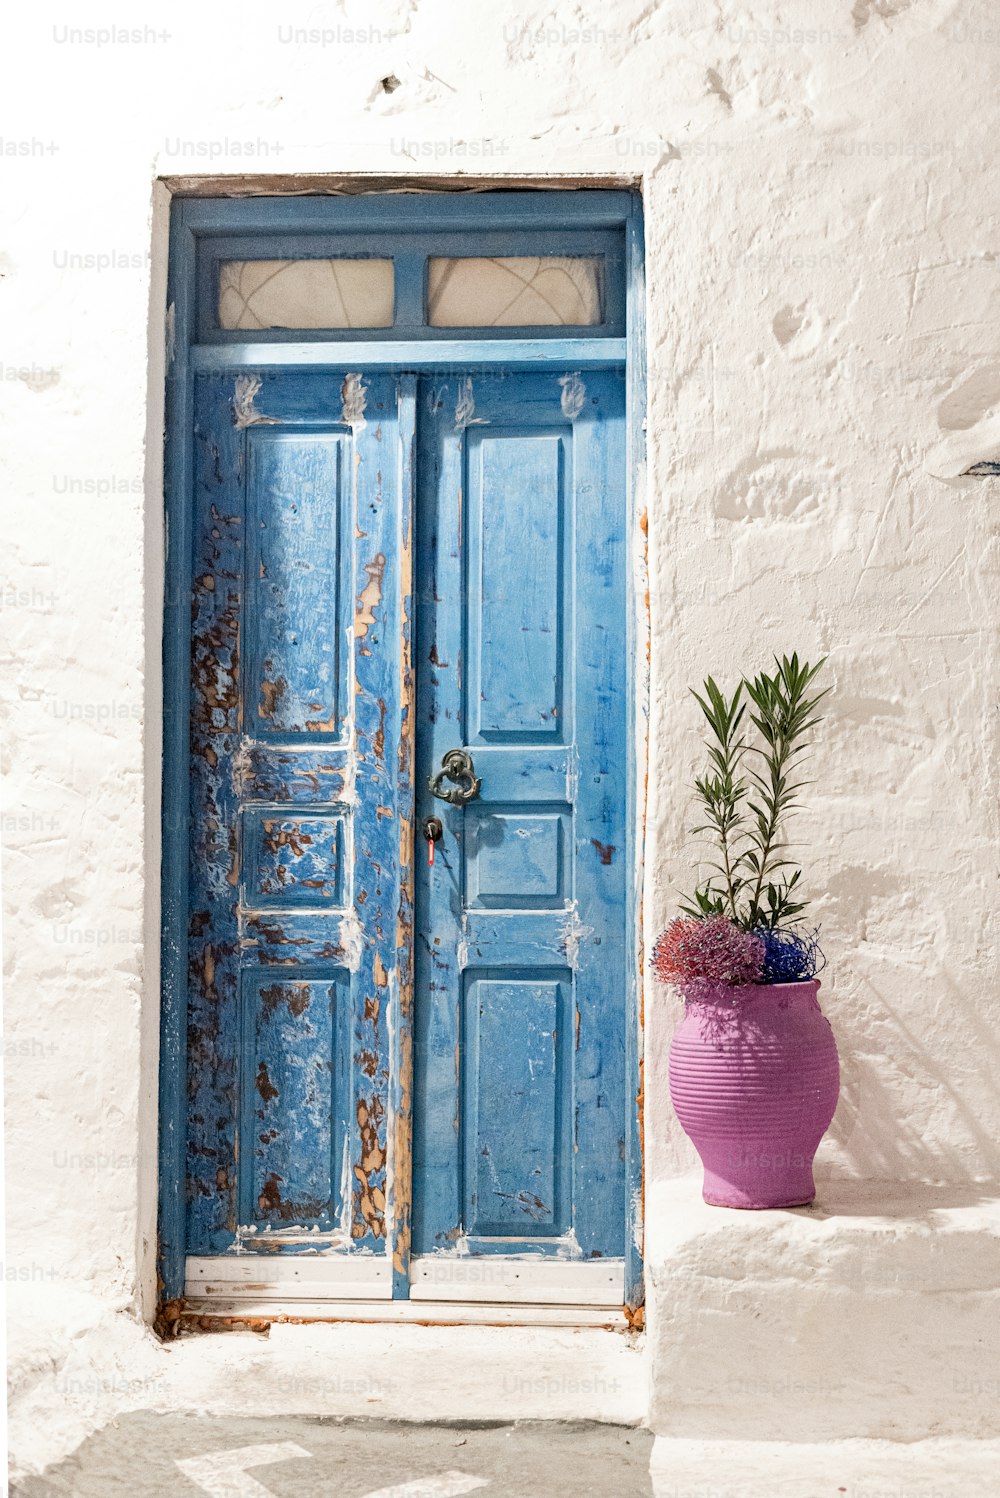 una puerta azul y una planta en maceta púrpura frente a ella